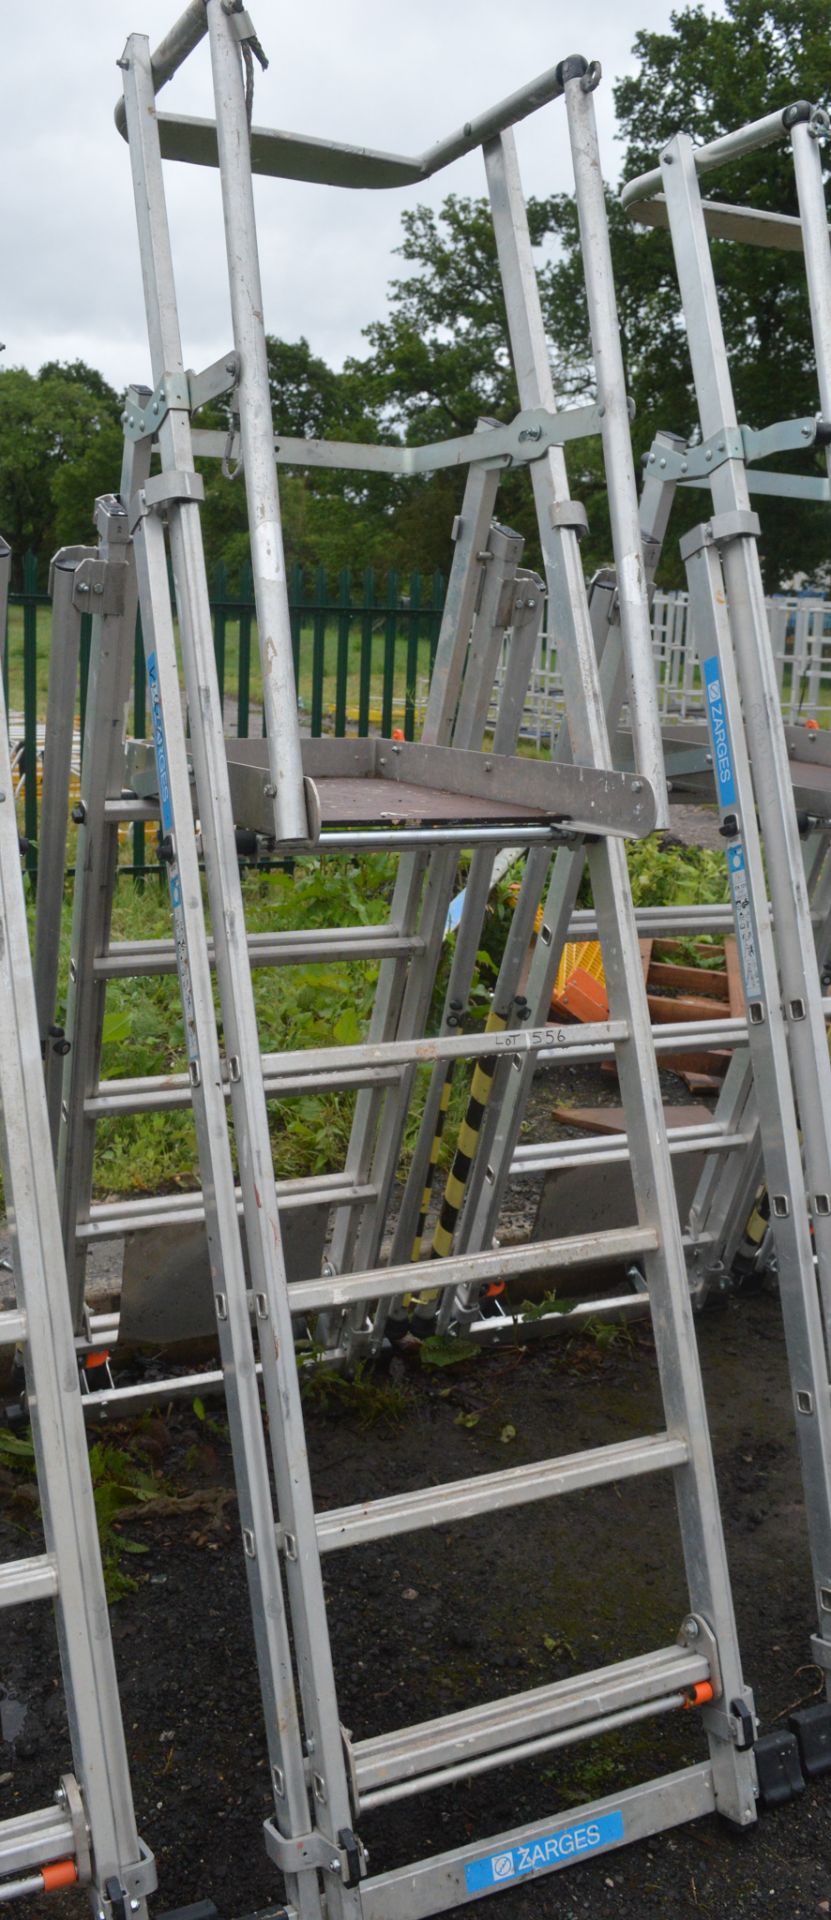 Zarges aluminium podium ladder A777937 - Image 2 of 2